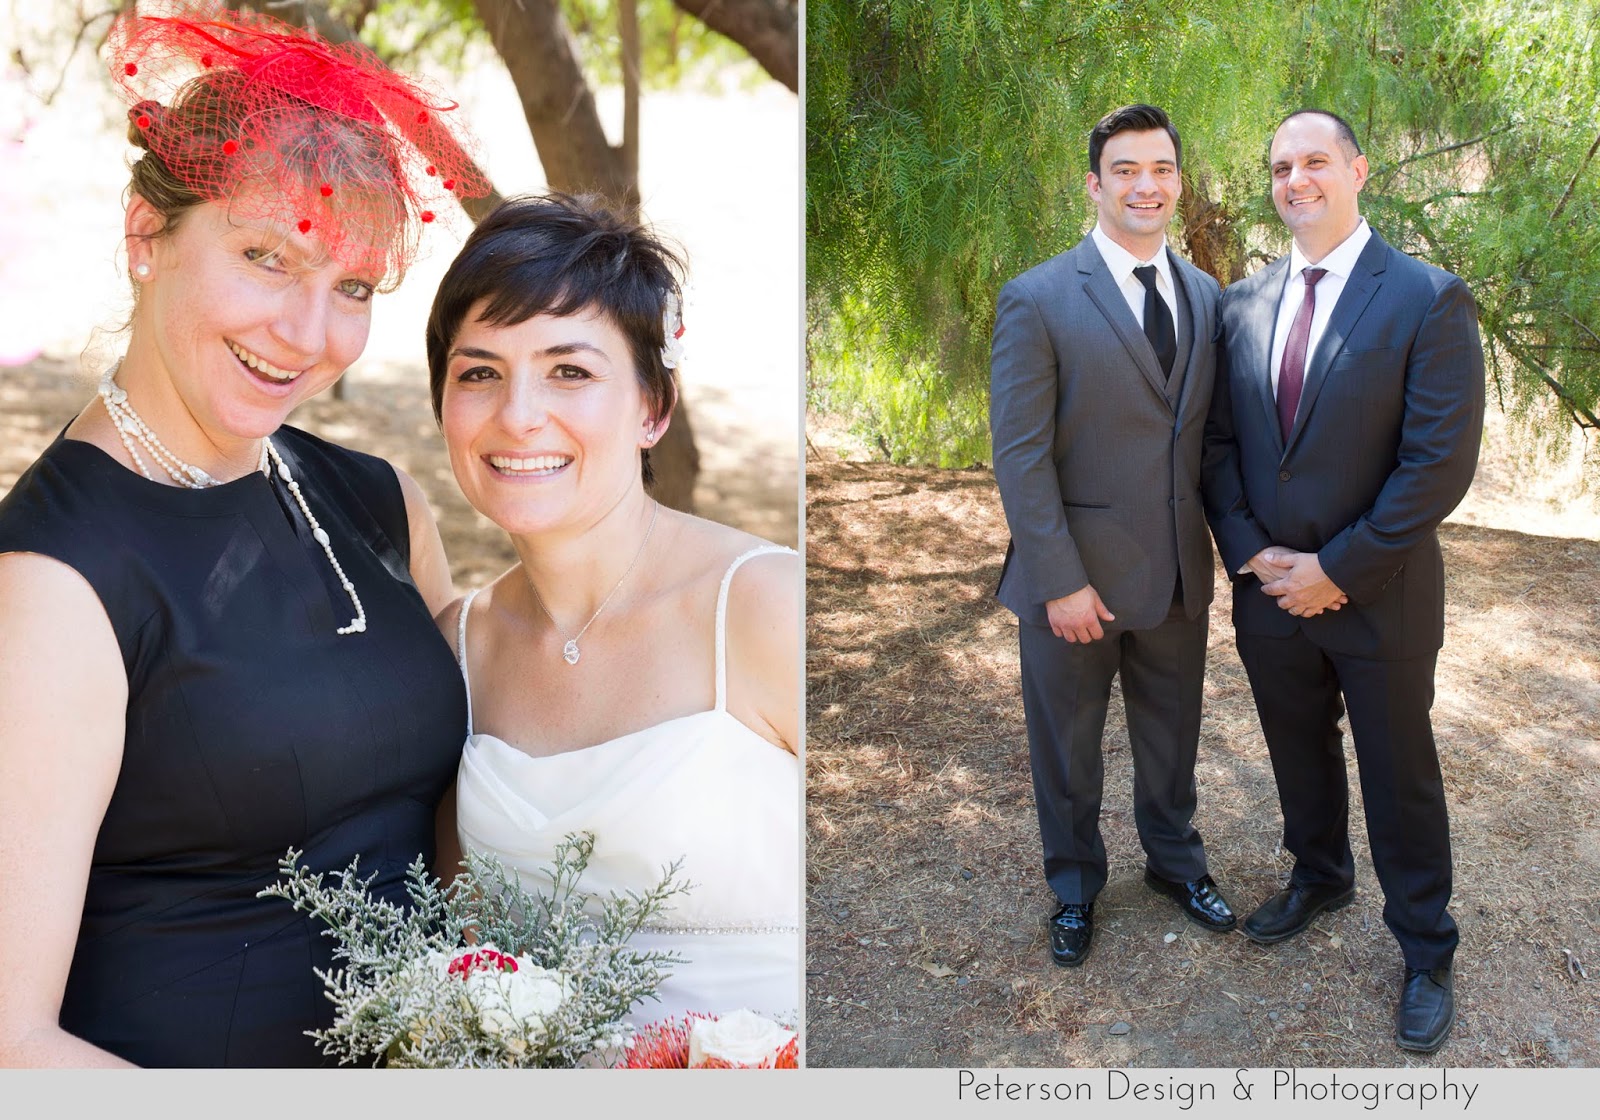 Milena & Iliian :: 9-13-14 :: Wedding in Woodland Hills